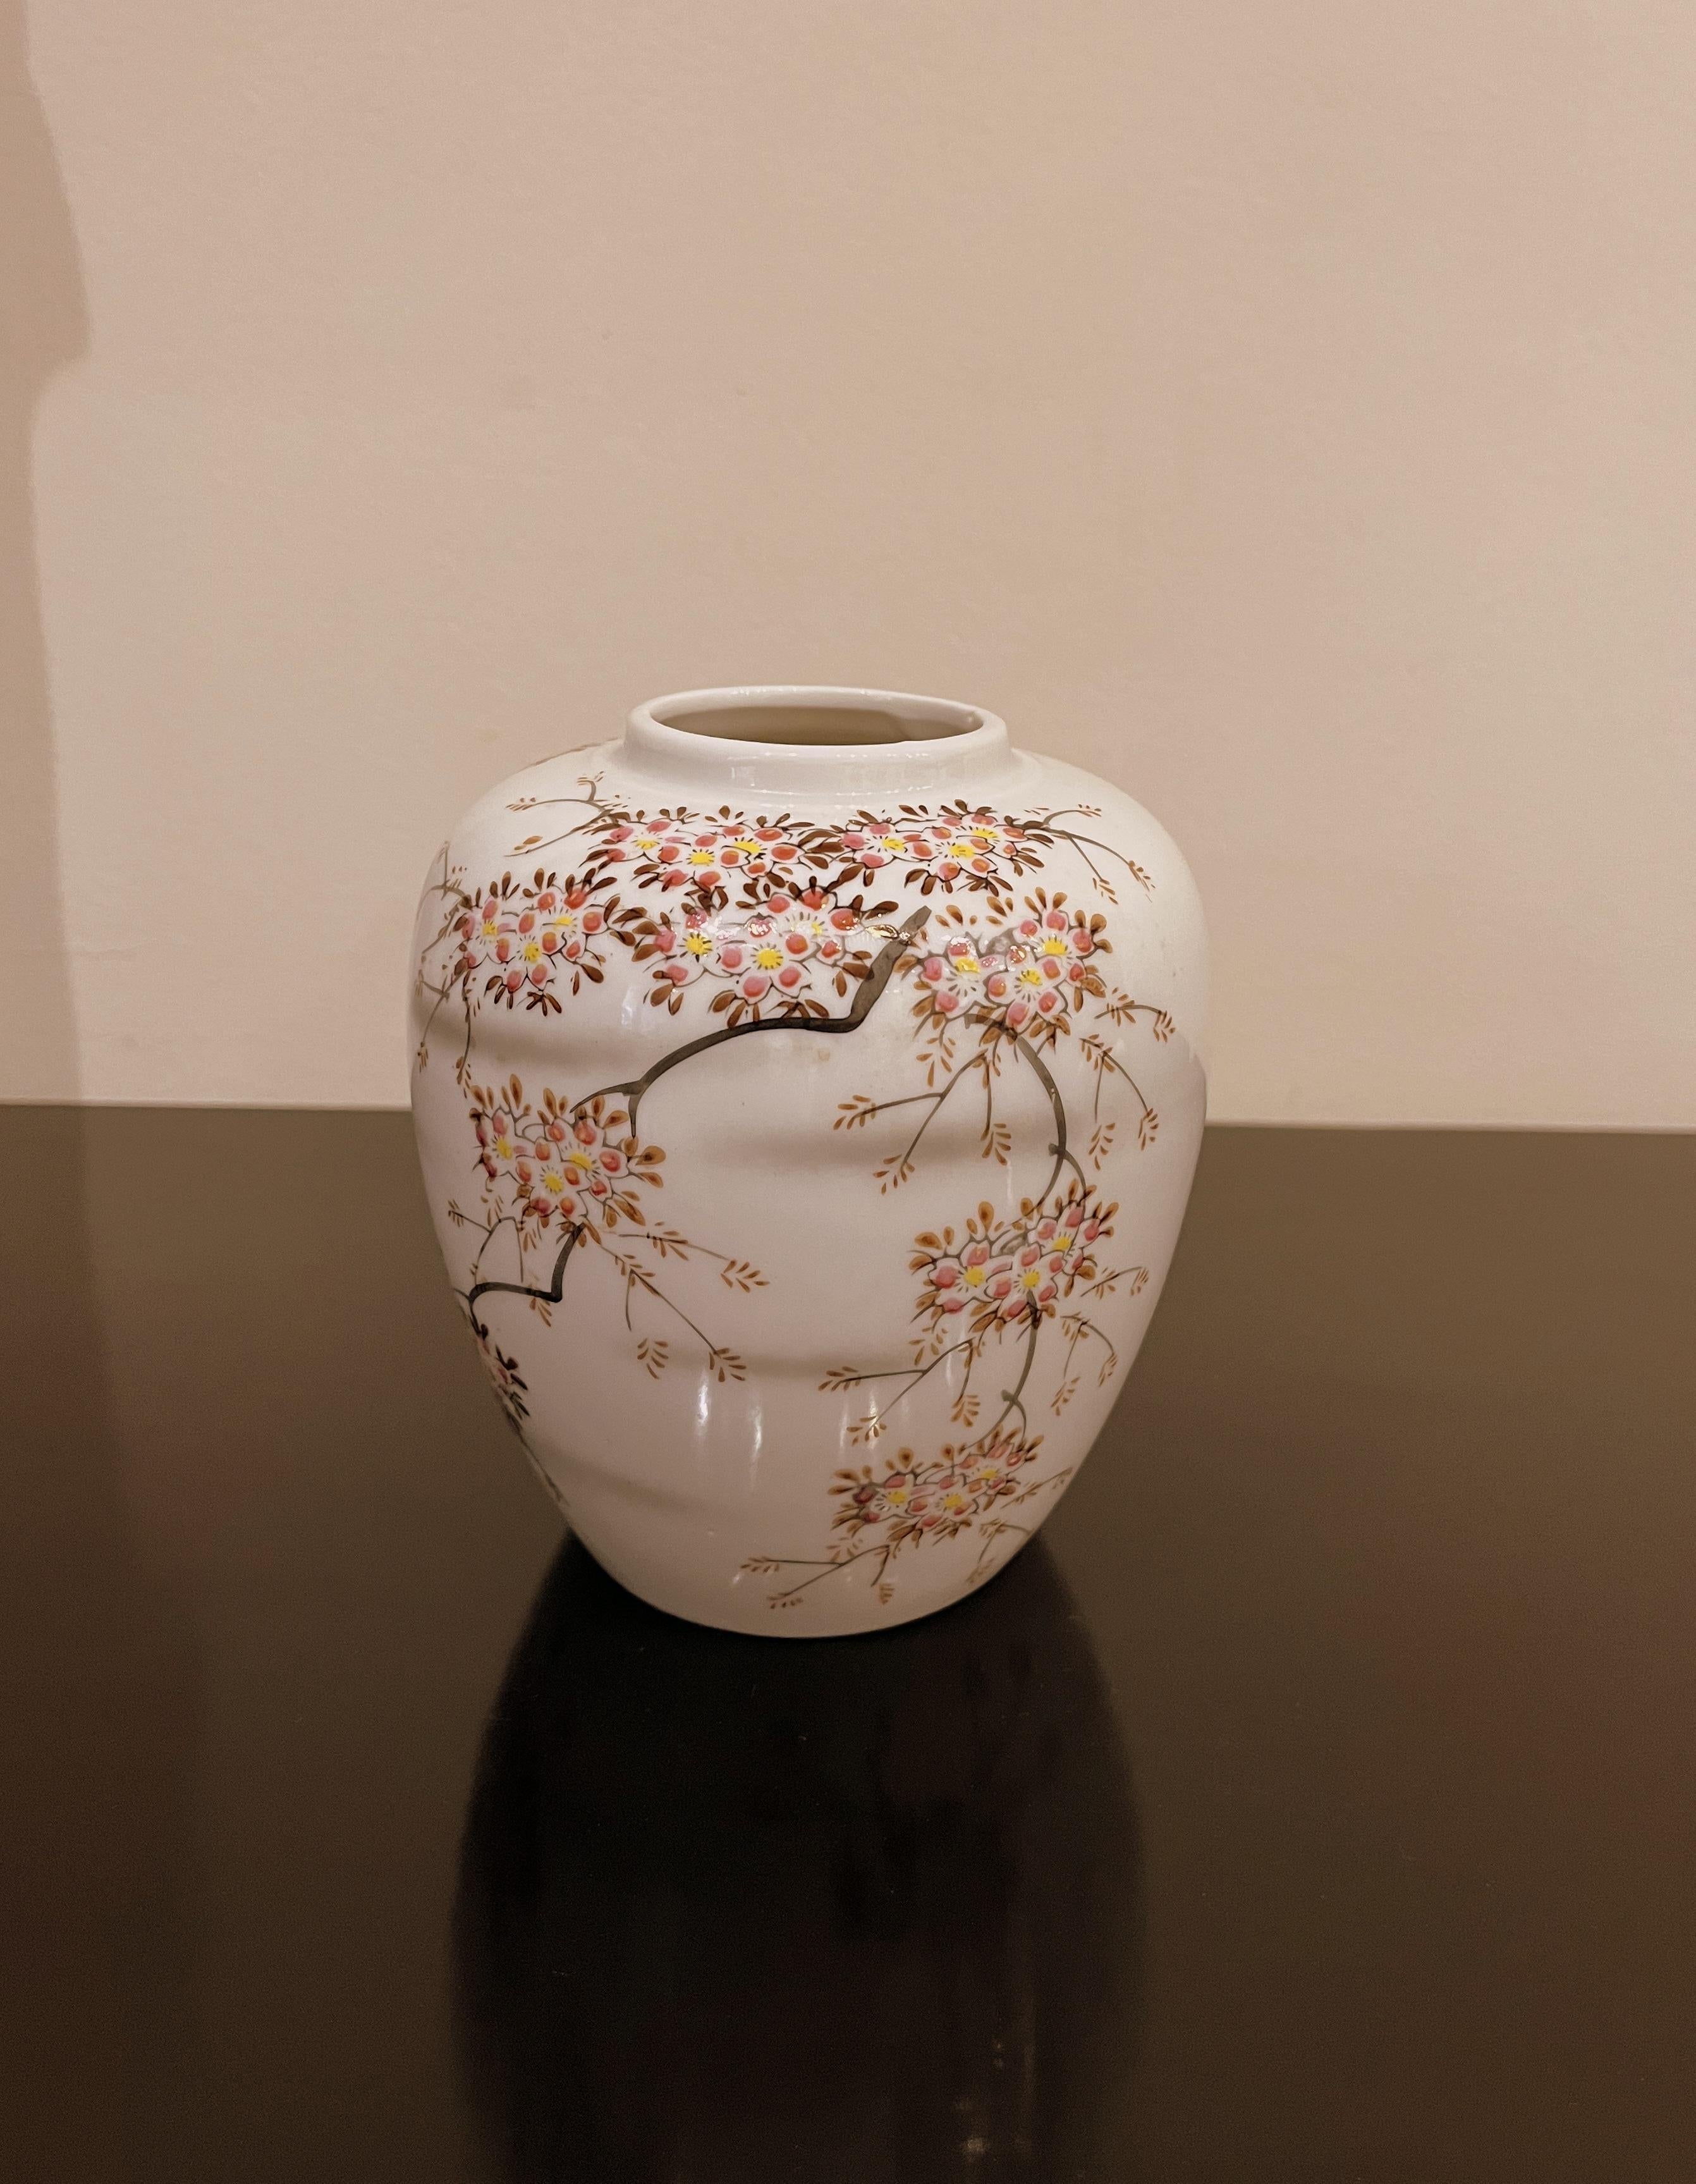 Japanese porcelain floral vase
4.5